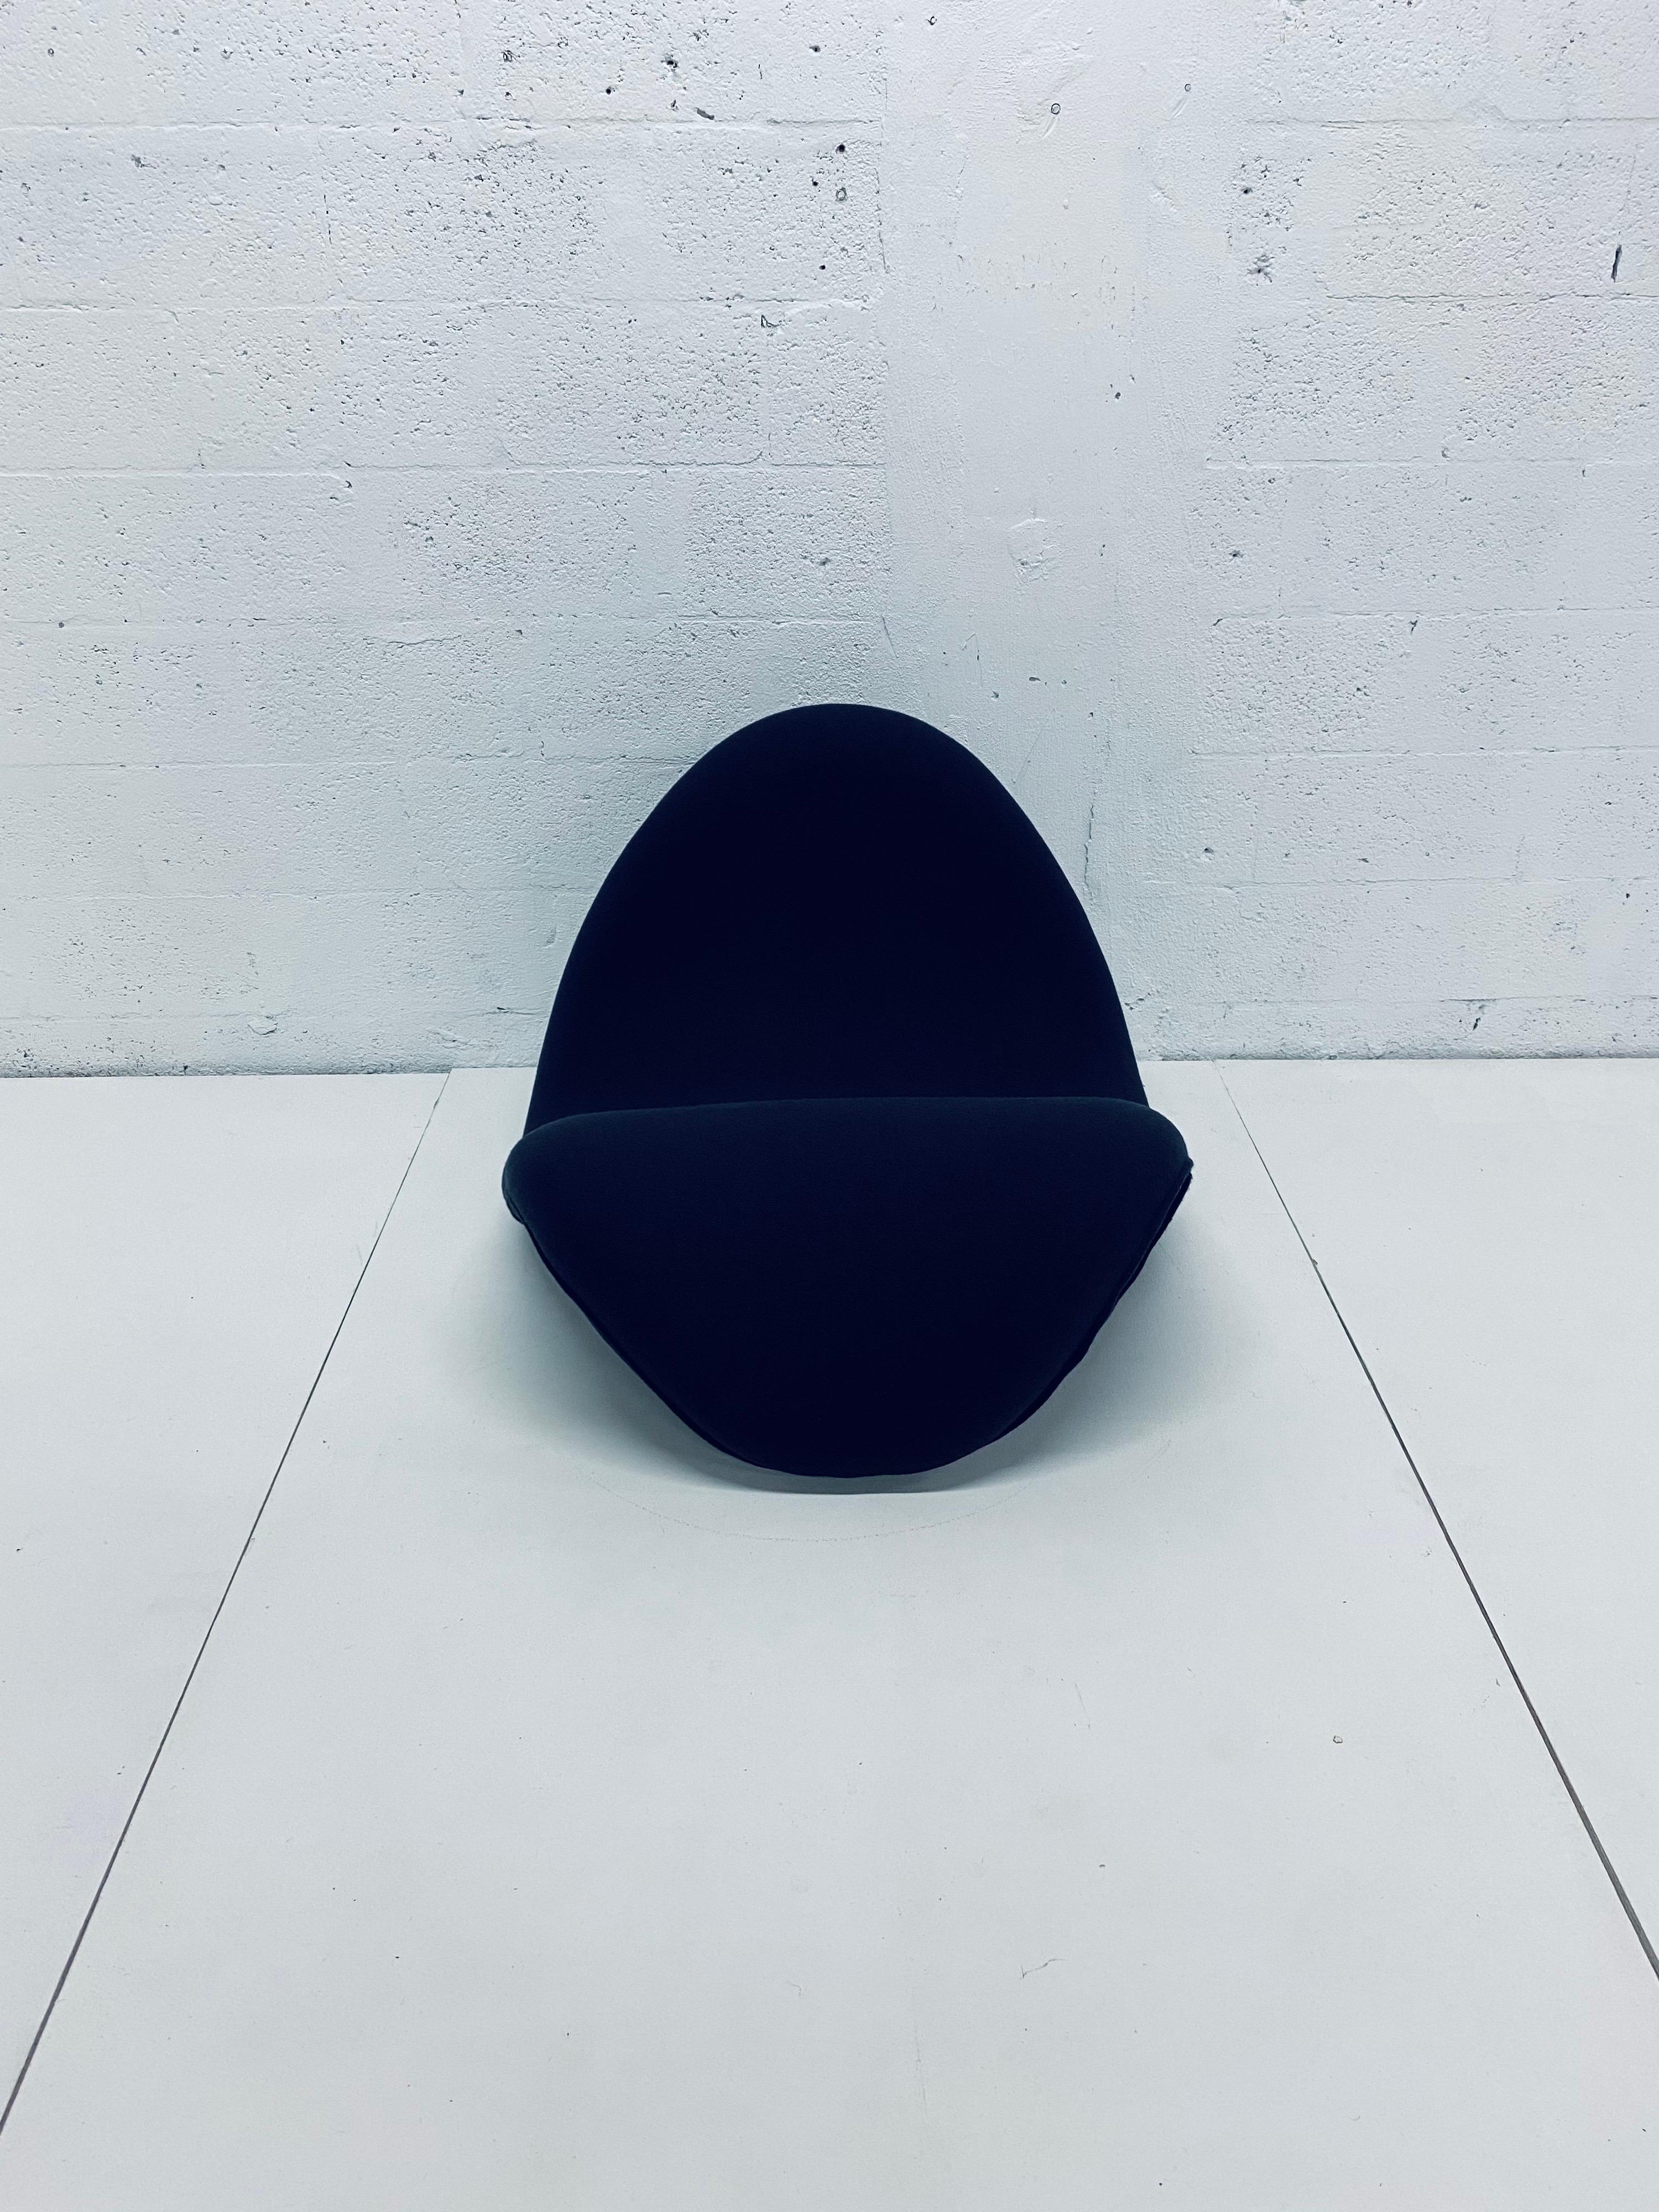 Pierre Paulin Tongue Chair Model F577 in Black Tonus for Artifort 1